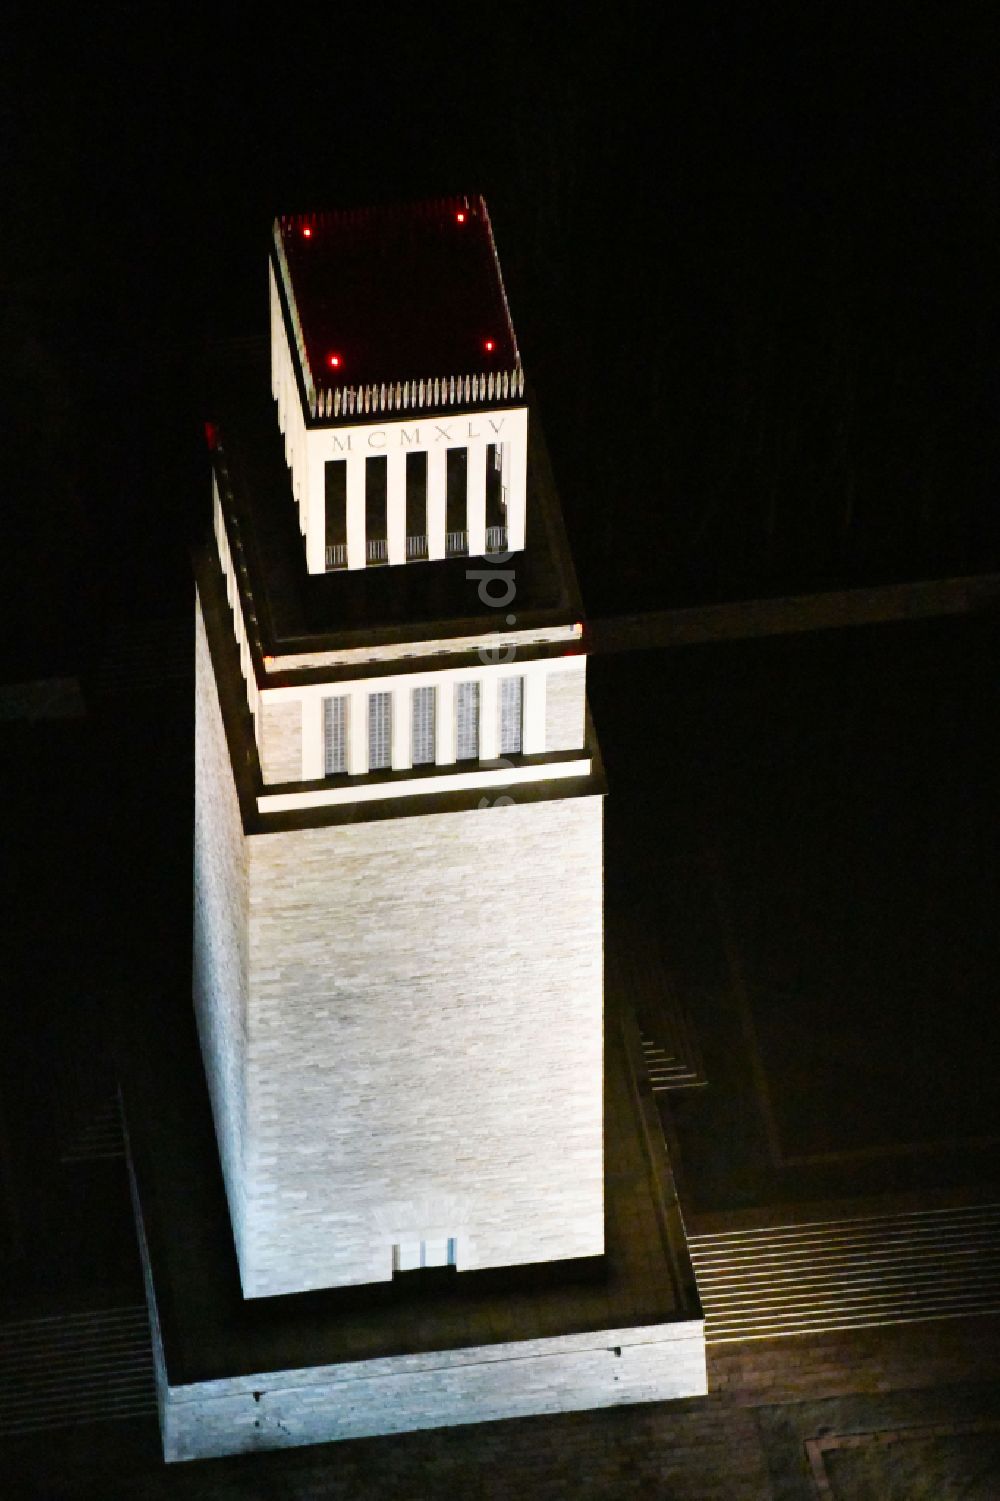 Nacht-Luftaufnahme Weimar - Nachtluftbild Glockenturm der Nationalen Mahn- und Gedenkstätte der DDR Buchenwald im Ortsteil Ettersberg in Weimar im Bundesland Thüringen, Deutschland